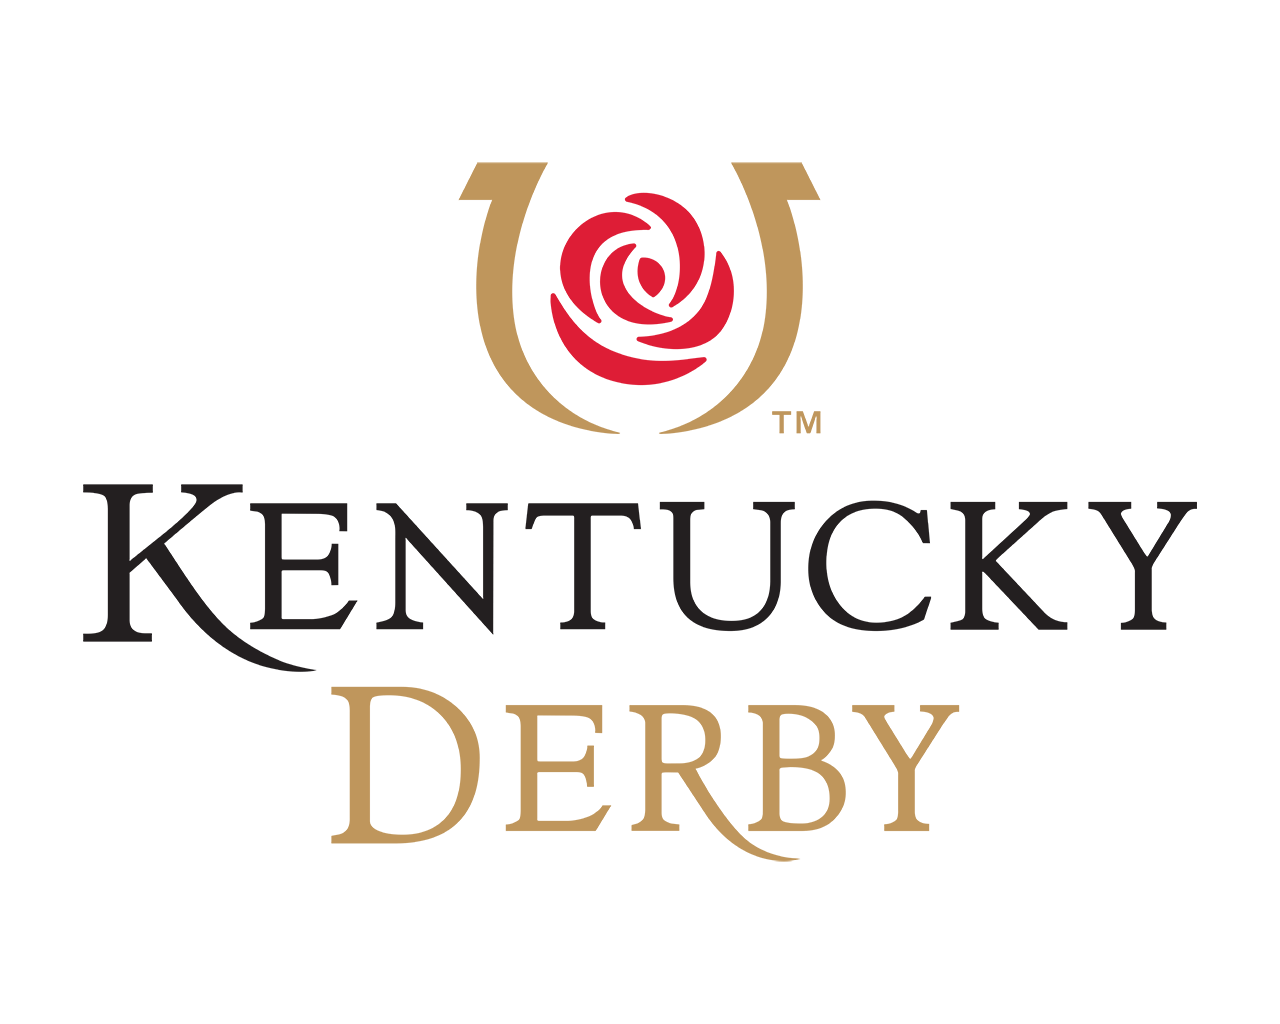 Kentucky Derby Logo Vector at Collection of Kentucky